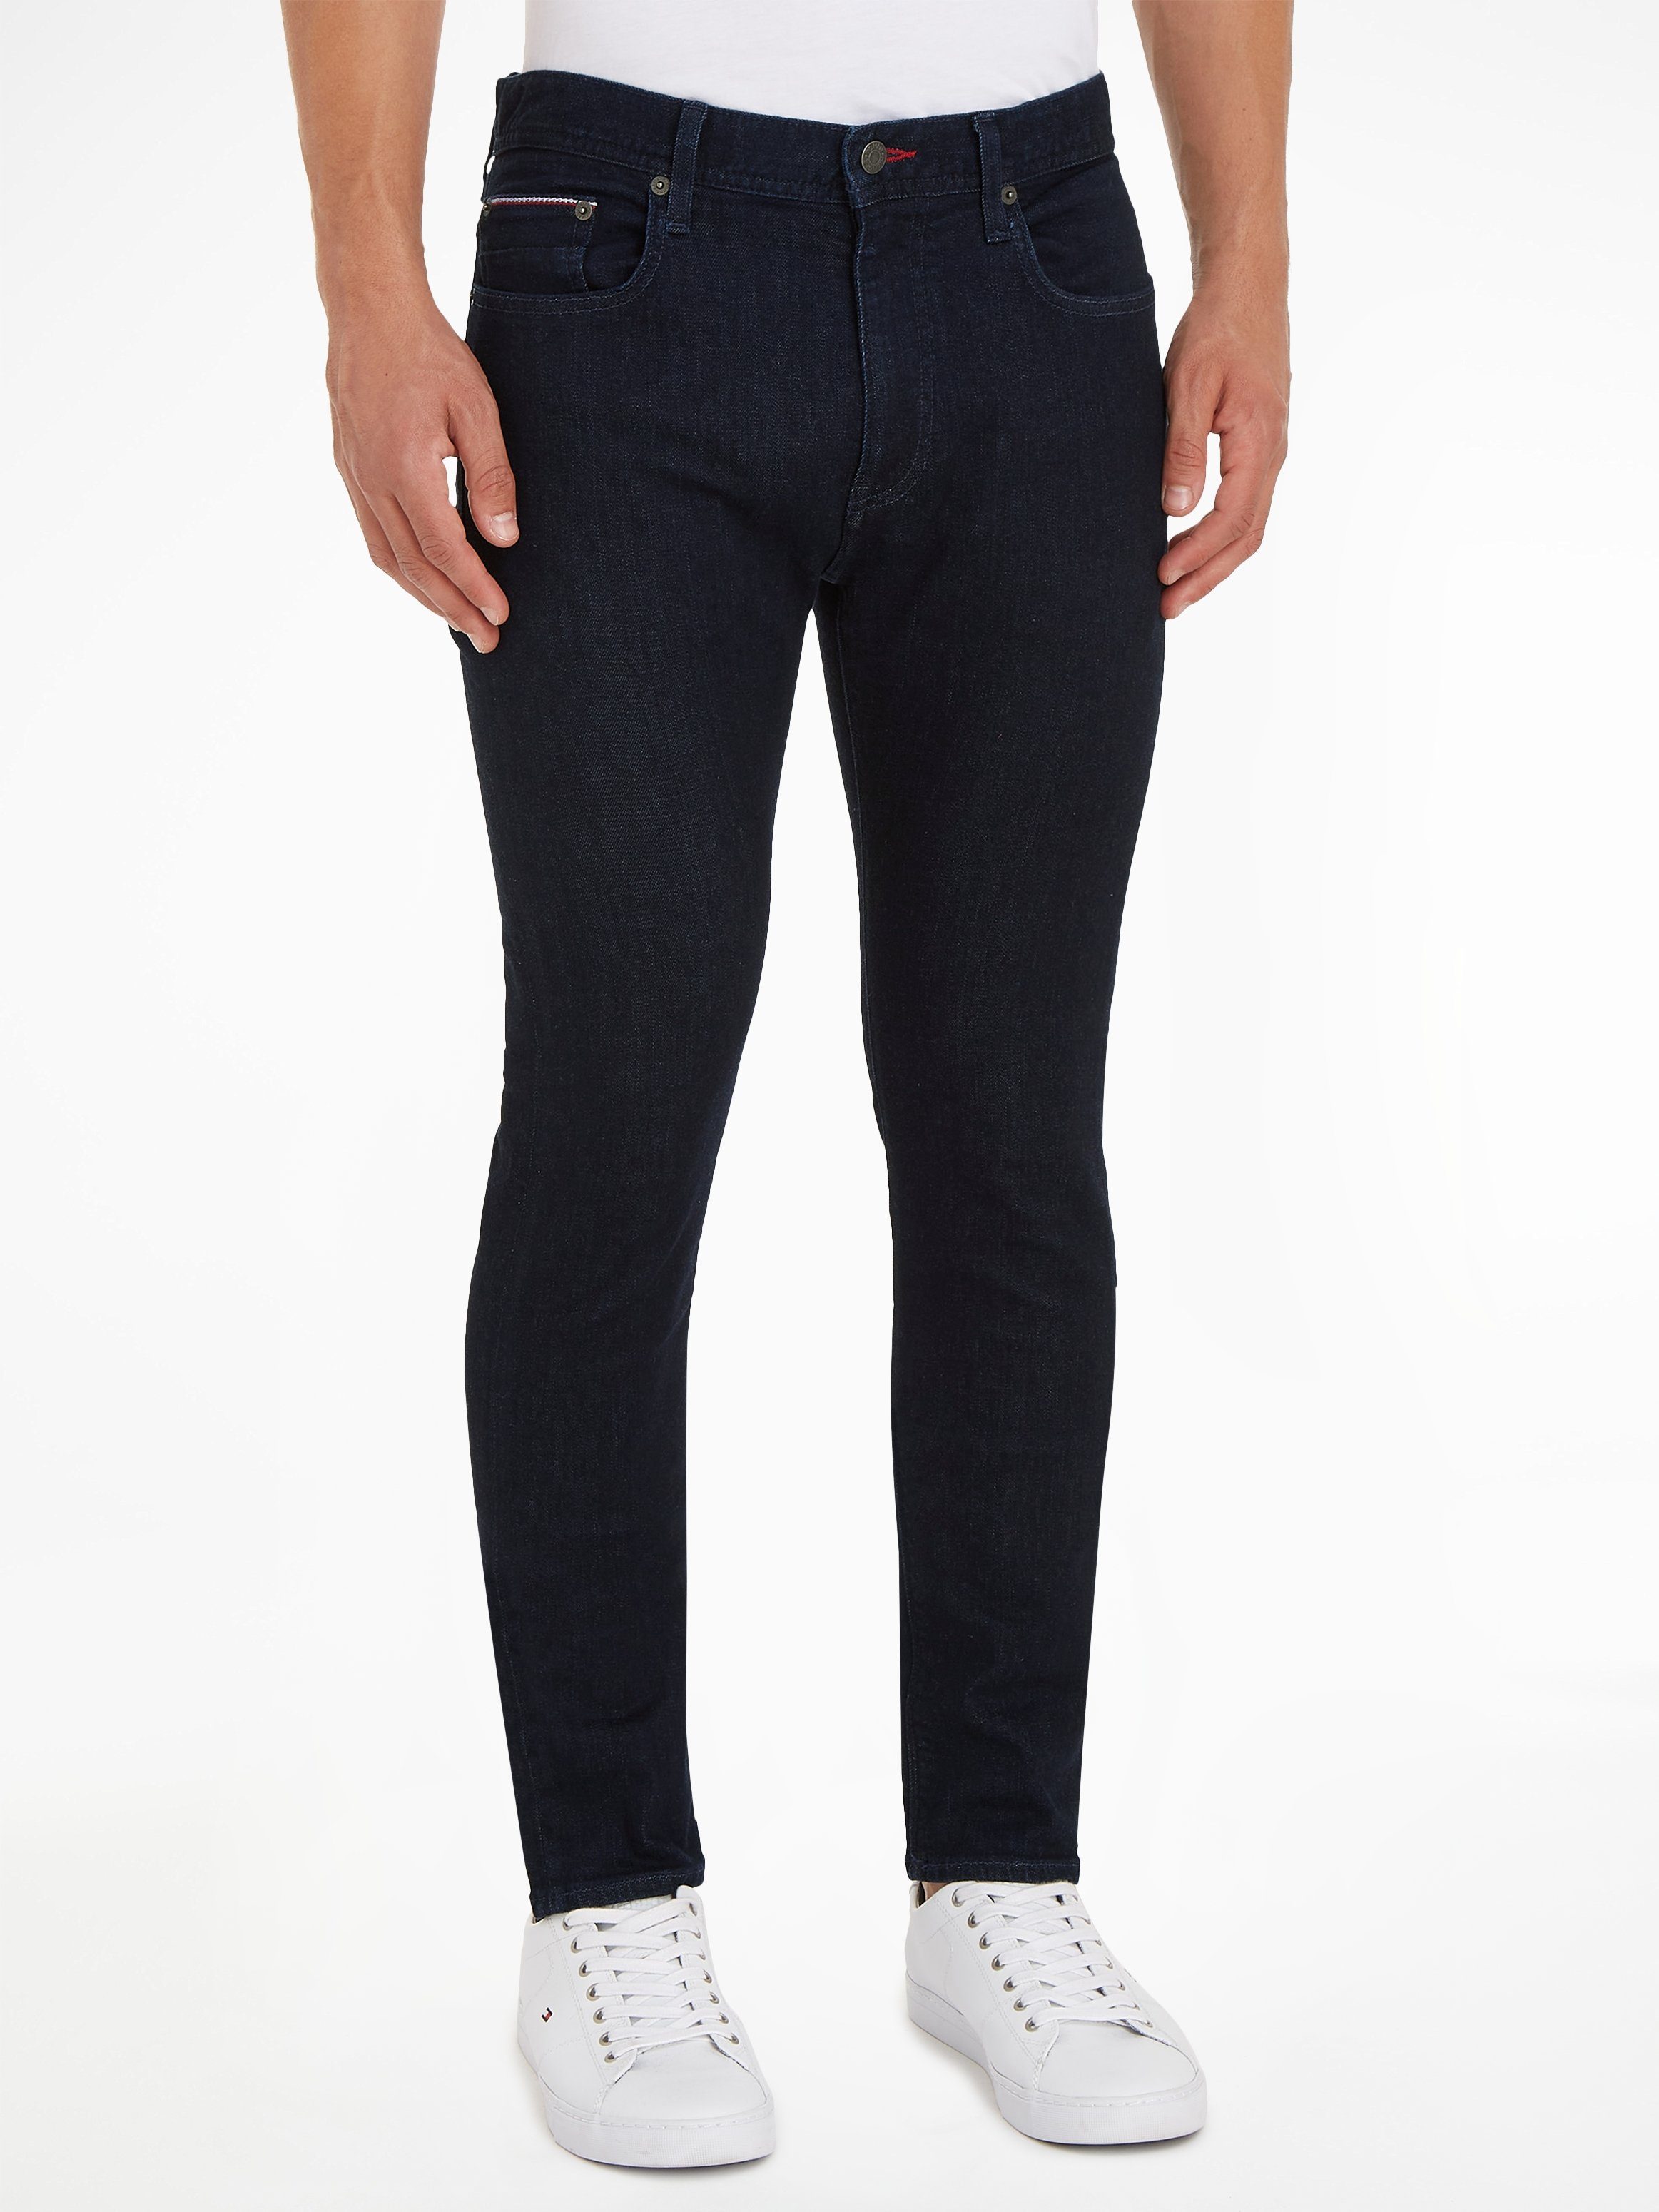 Hilfiger Bleecker Tommy jeans Slim fit snel gekocht | OTTO online